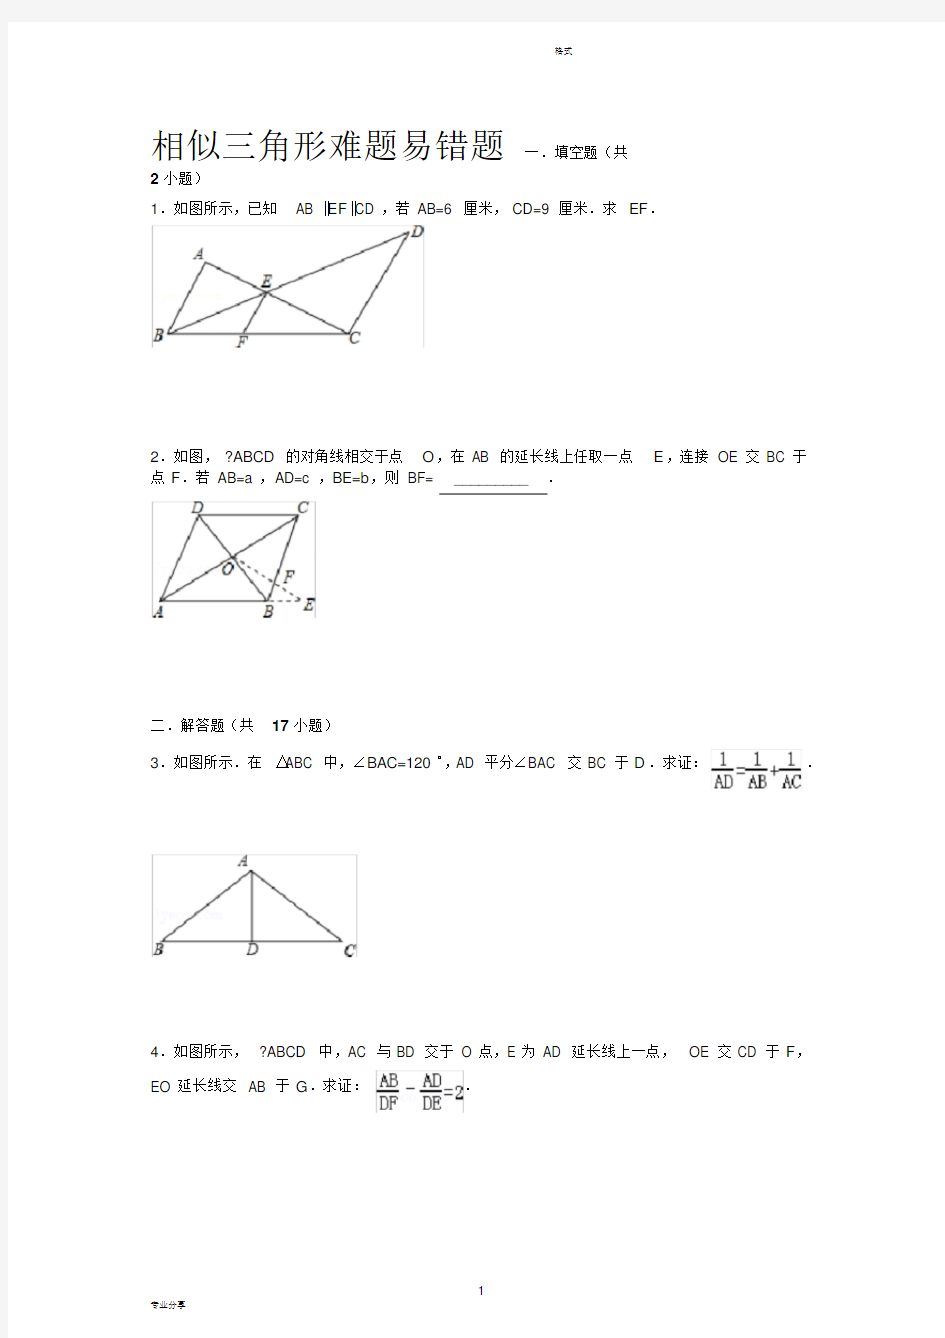 (完整版)初中数学相似三角形经典练习难题易错题(附详解)